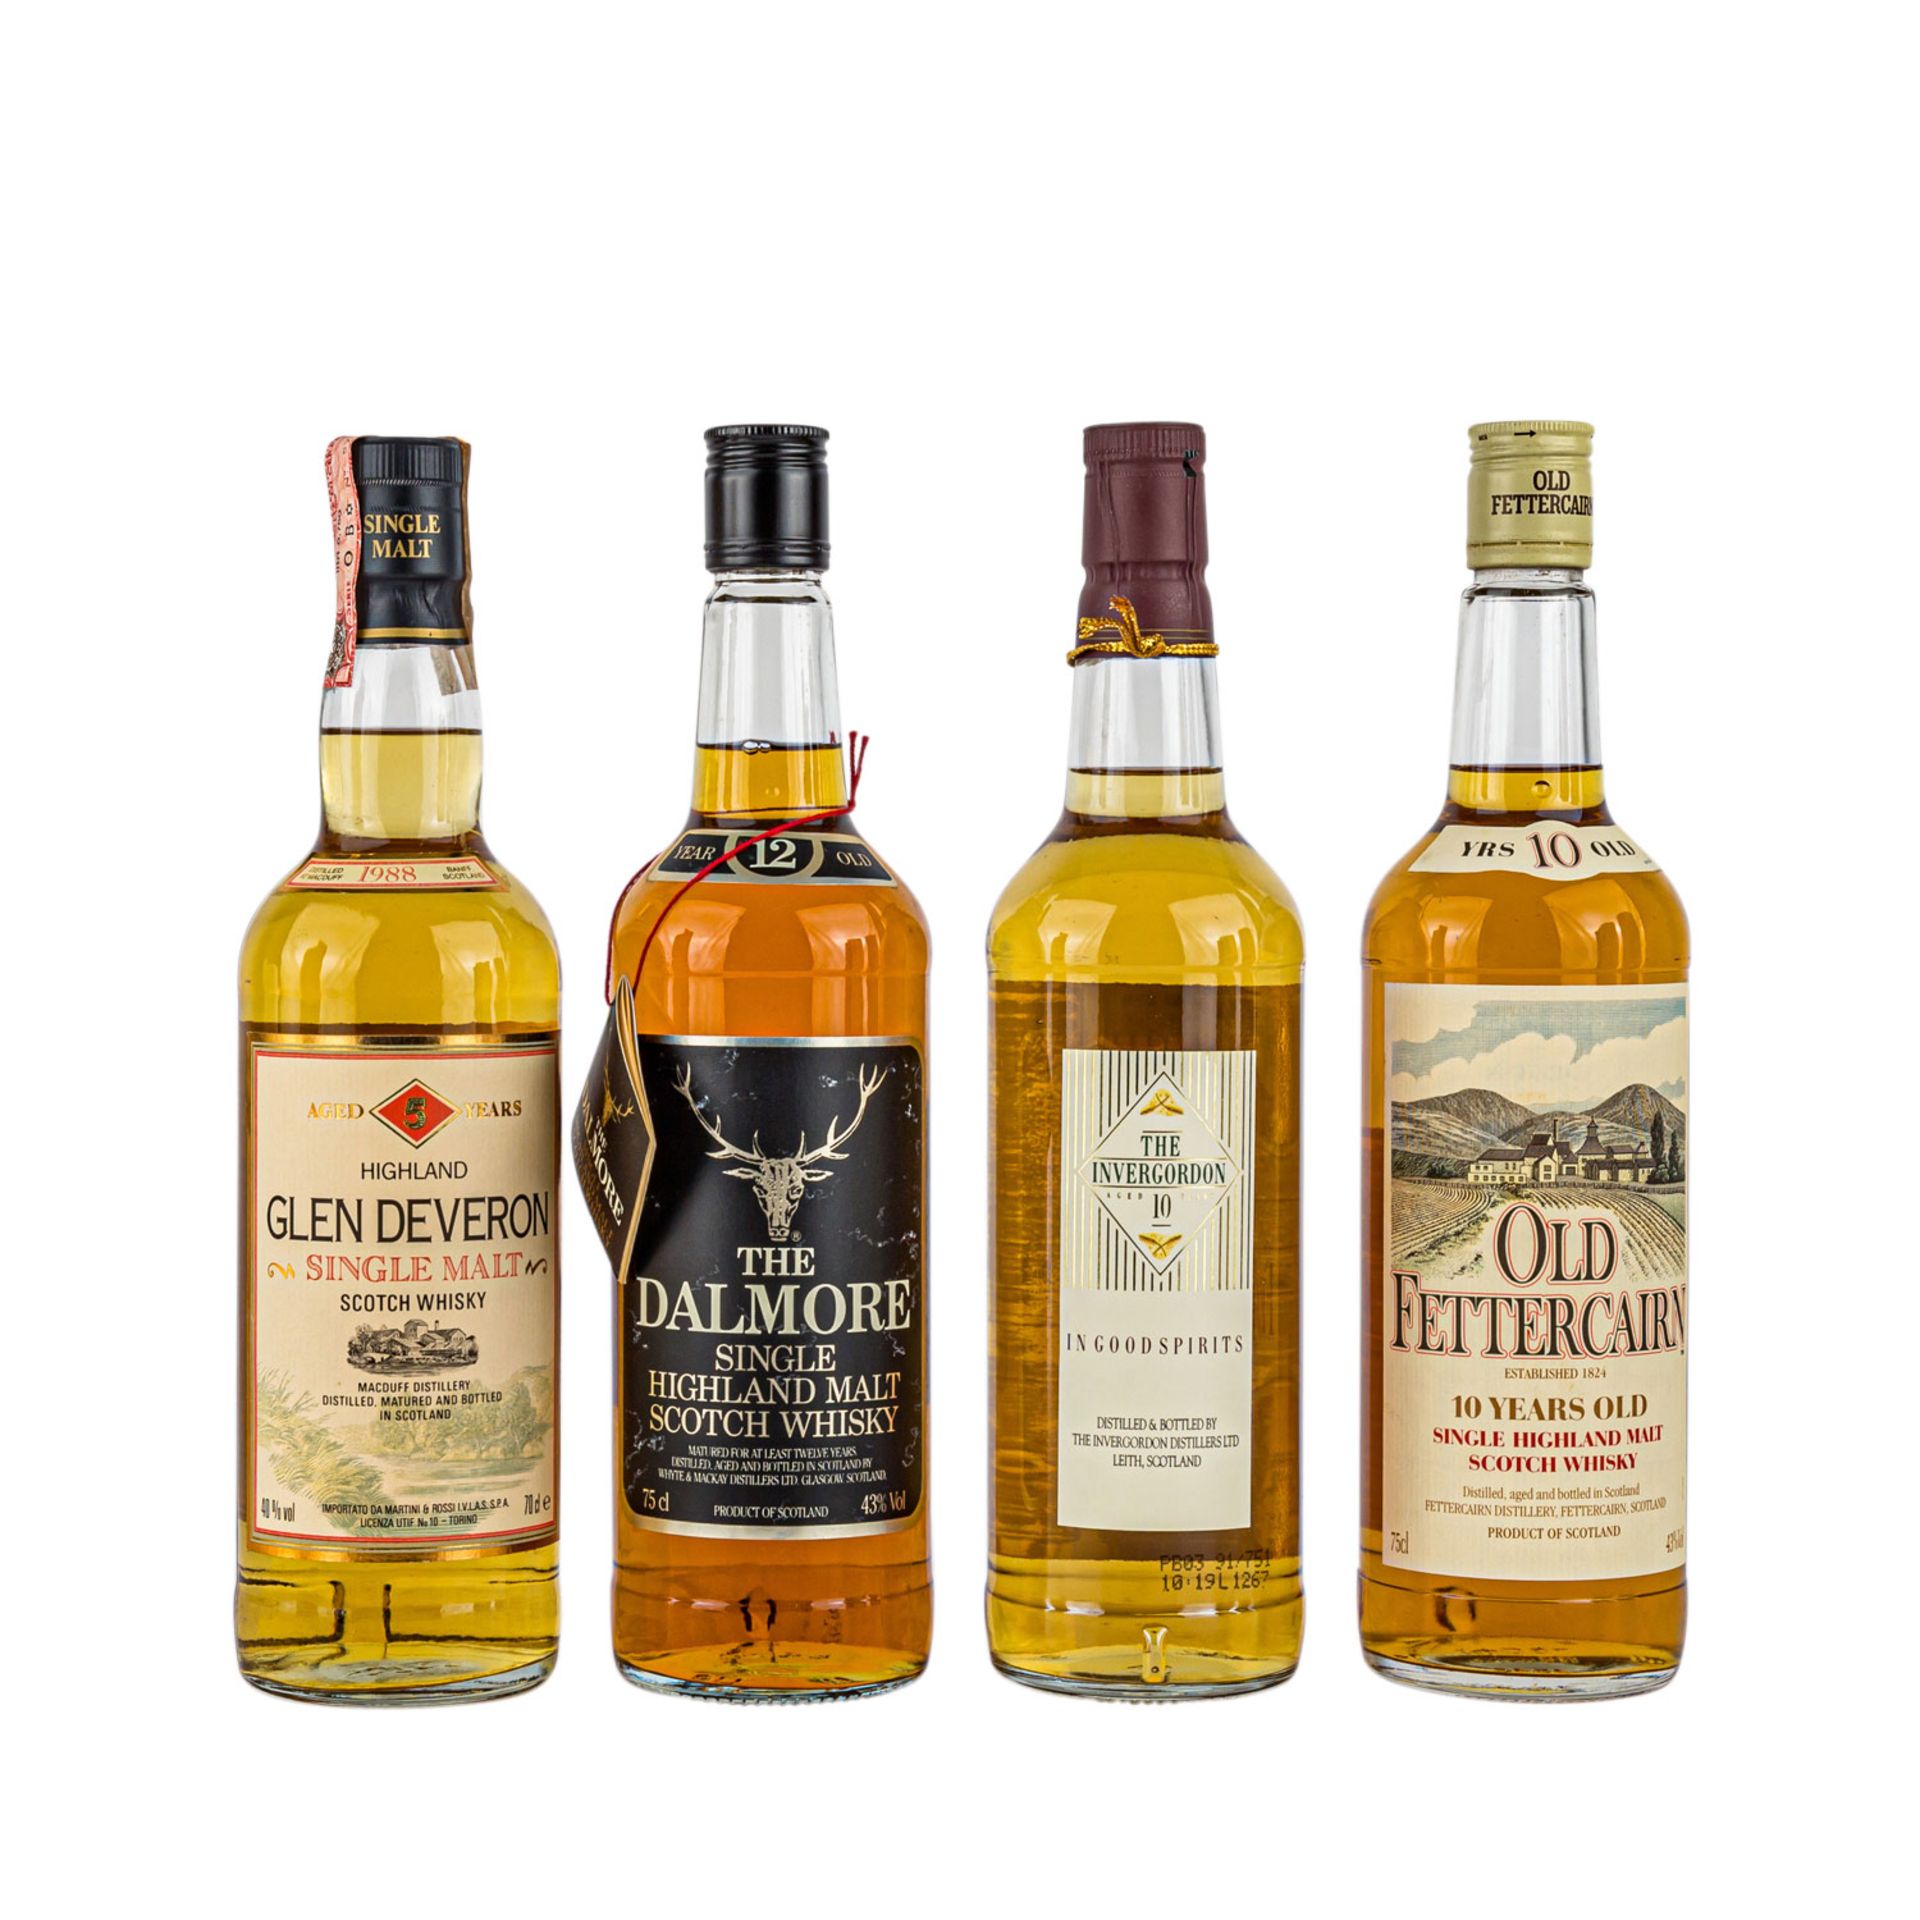 4 Flaschen Single Malt Scotch Whisky GLEN DEVERON 5 years / OLD FETTERCAIRN 10 years / INVERGORDON - Bild 2 aus 2